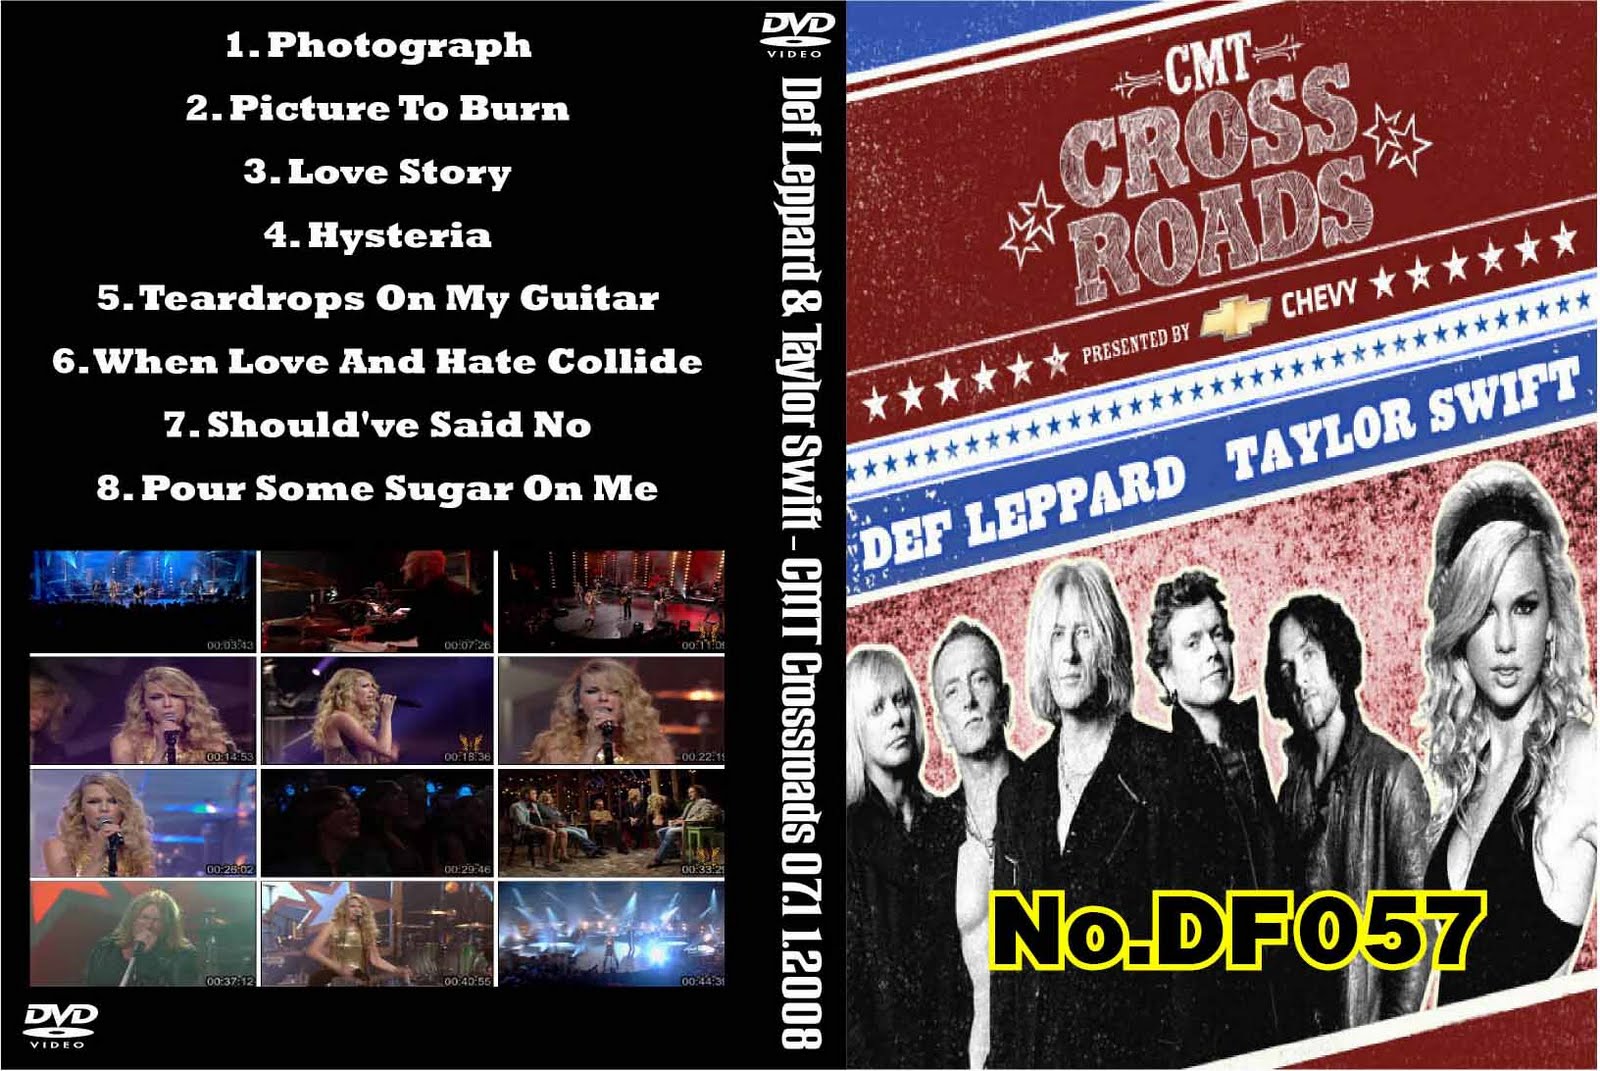 http://2.bp.blogspot.com/_j92JYU6EuQY/S9s8CZ3z7kI/AAAAAAAAAws/zQPK9W4Ntts/s1600/dvd+concert_dvd+bootleg_dvd+concert+bootleg_bootlegth_Def+Leppard+%26+Taylor+Swift+-+CMT+Crossroad+2008-07-11.jpg